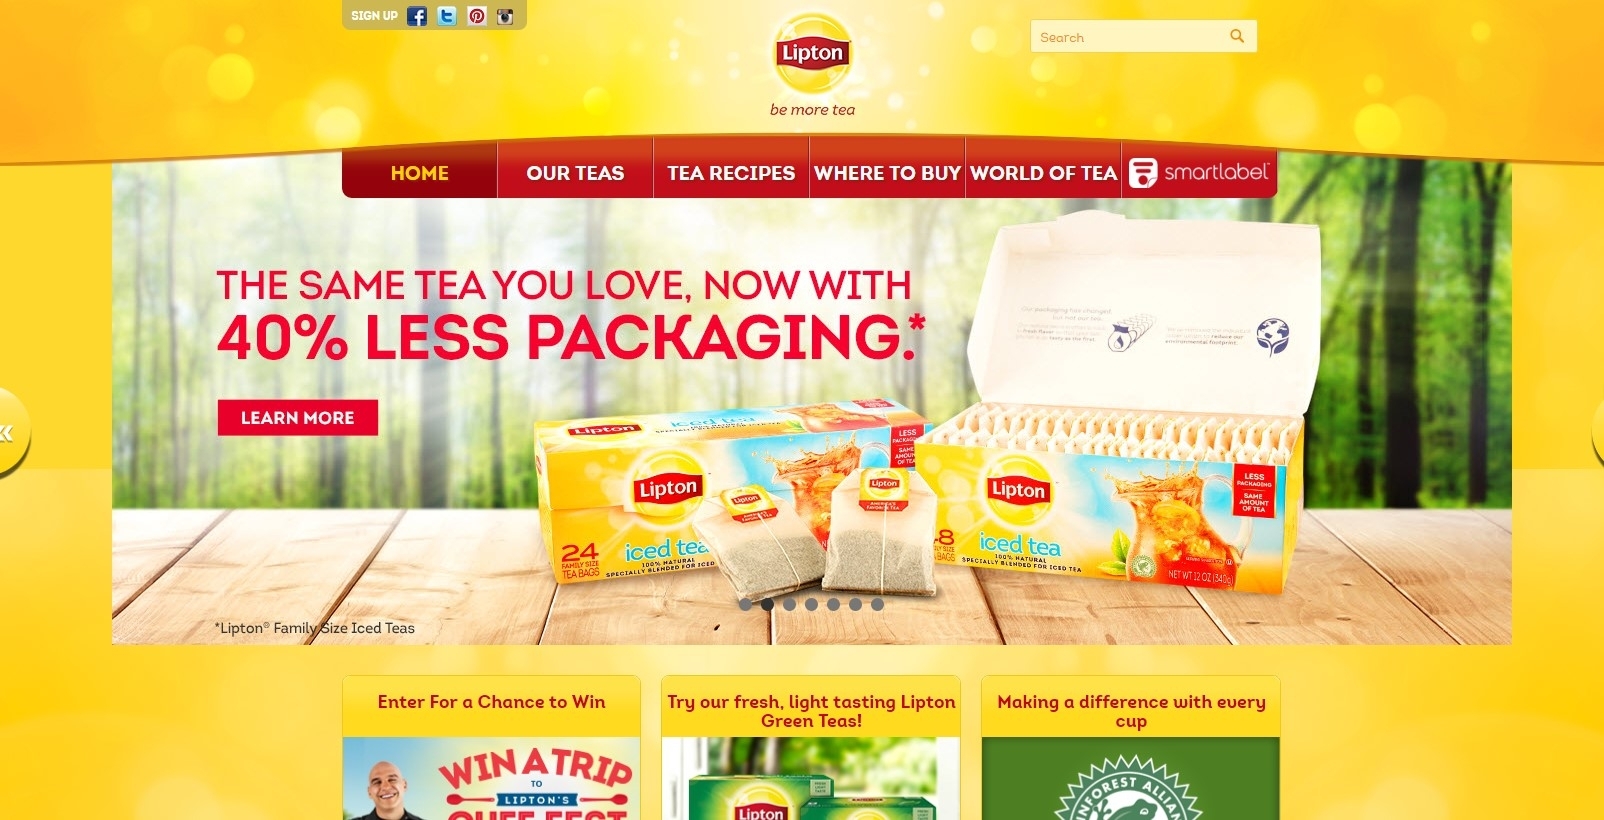 Lipton Tea - farvepsykologi til e-handelswebsteder